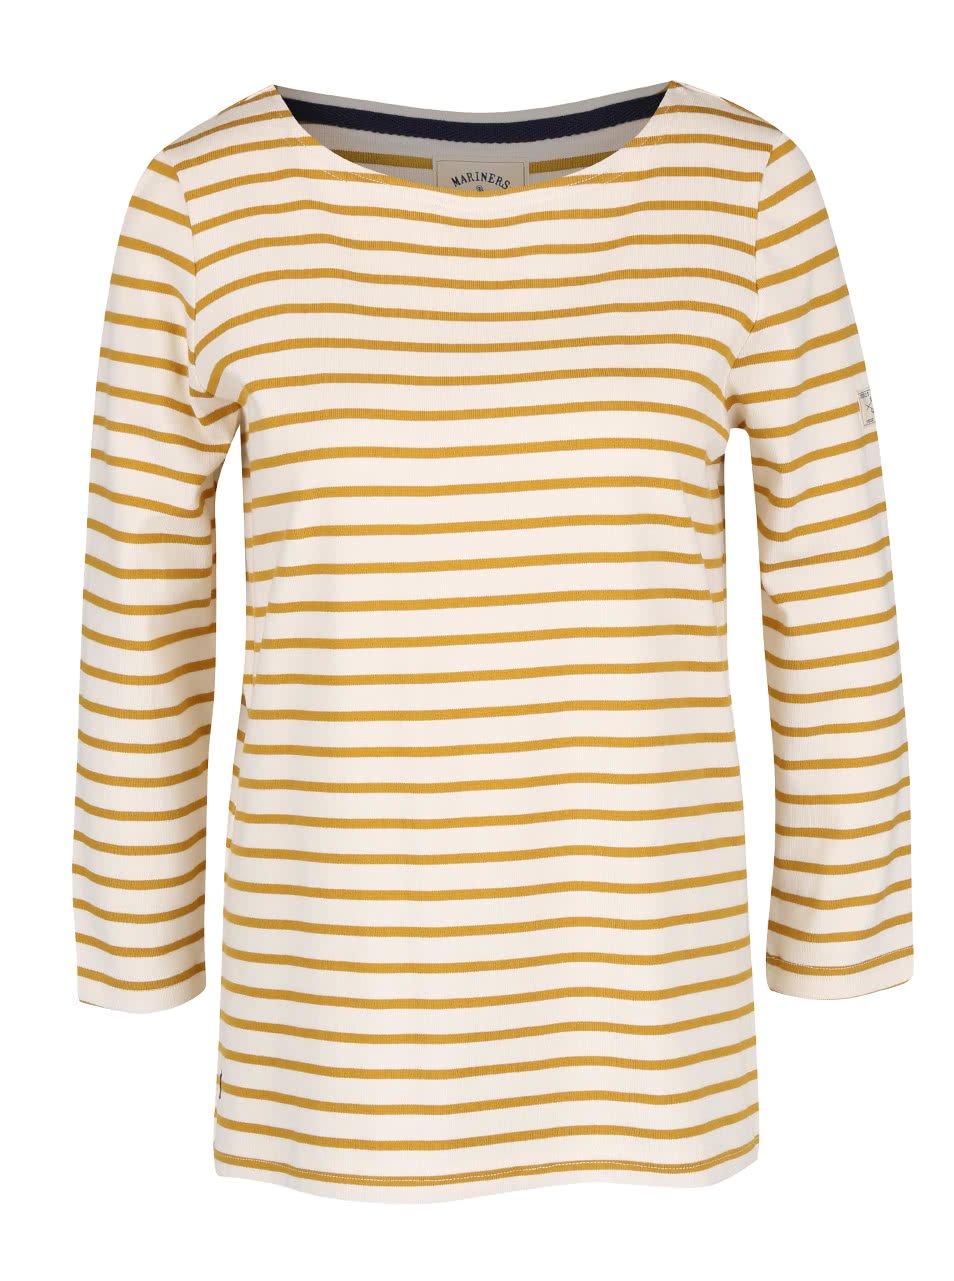 Žluto-krémové dámské pruhované tričko s 3/4 rukávem Tom Joule Harbour